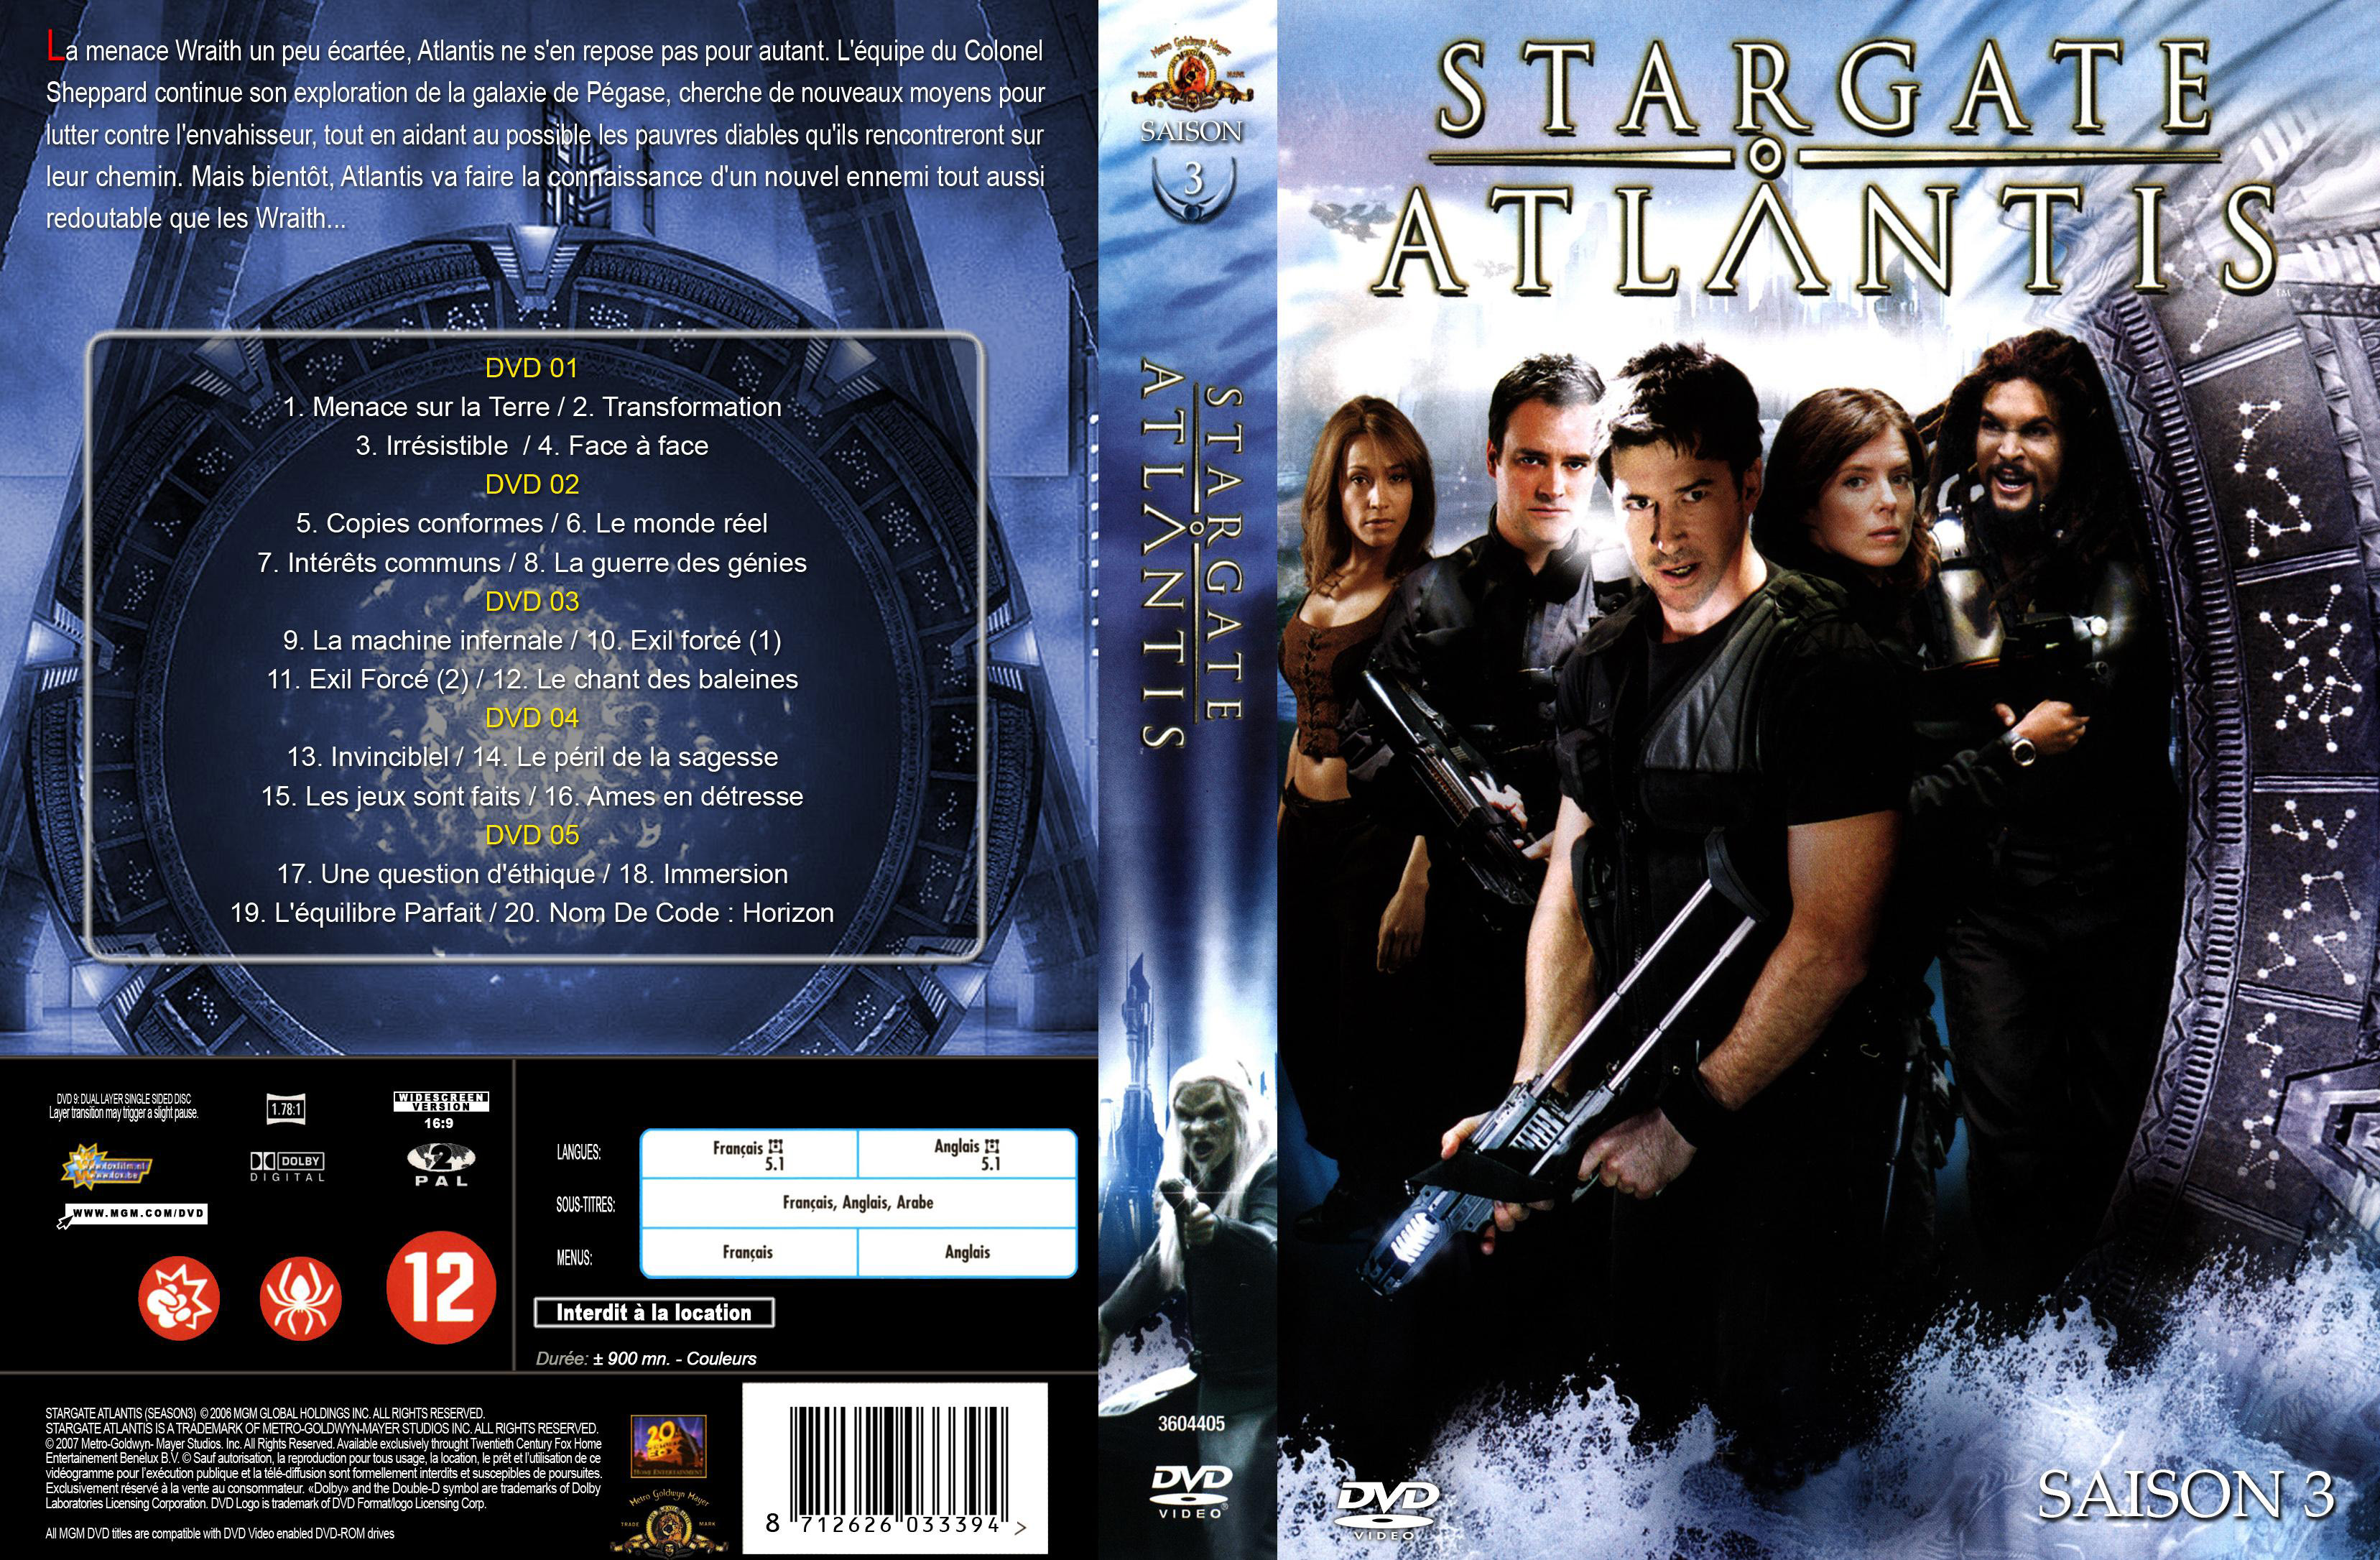 Jaquette DVD Stargate atlantis saison 3 COFFRET